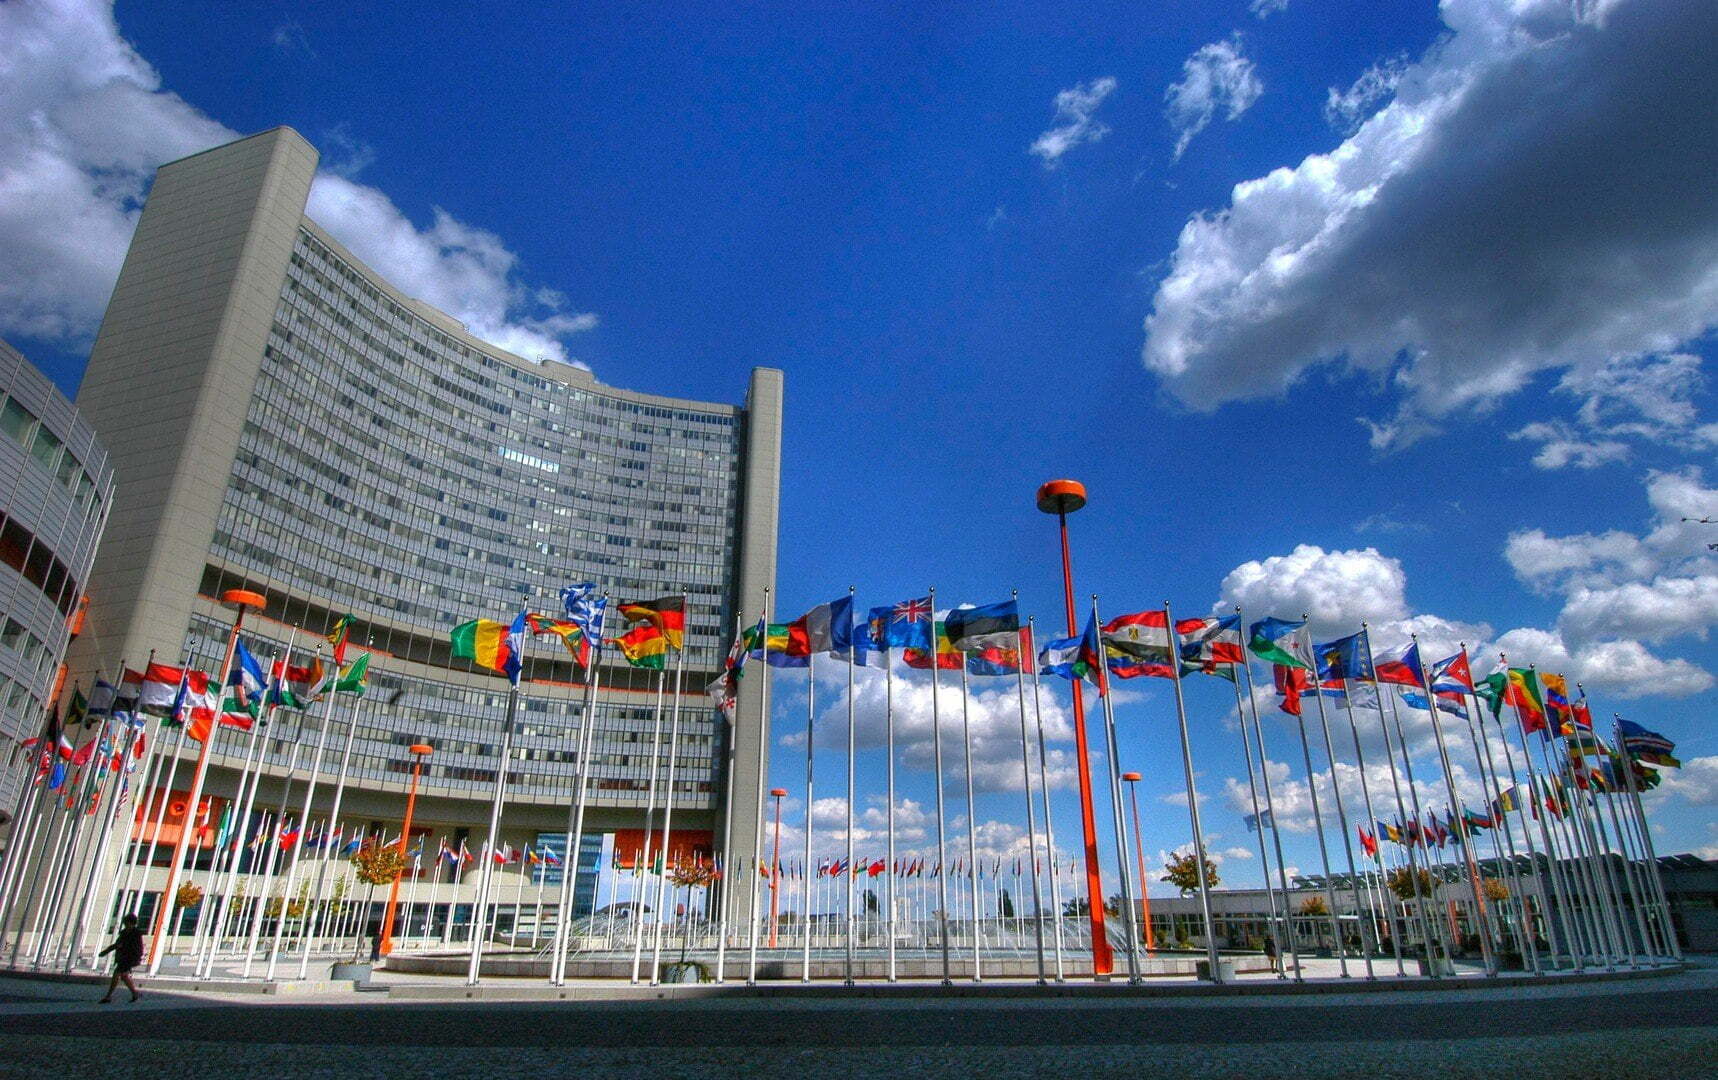  Майже 40 країн-членів ООН звинуватили Росію в поширенні фейків Фото з відкритих джерел